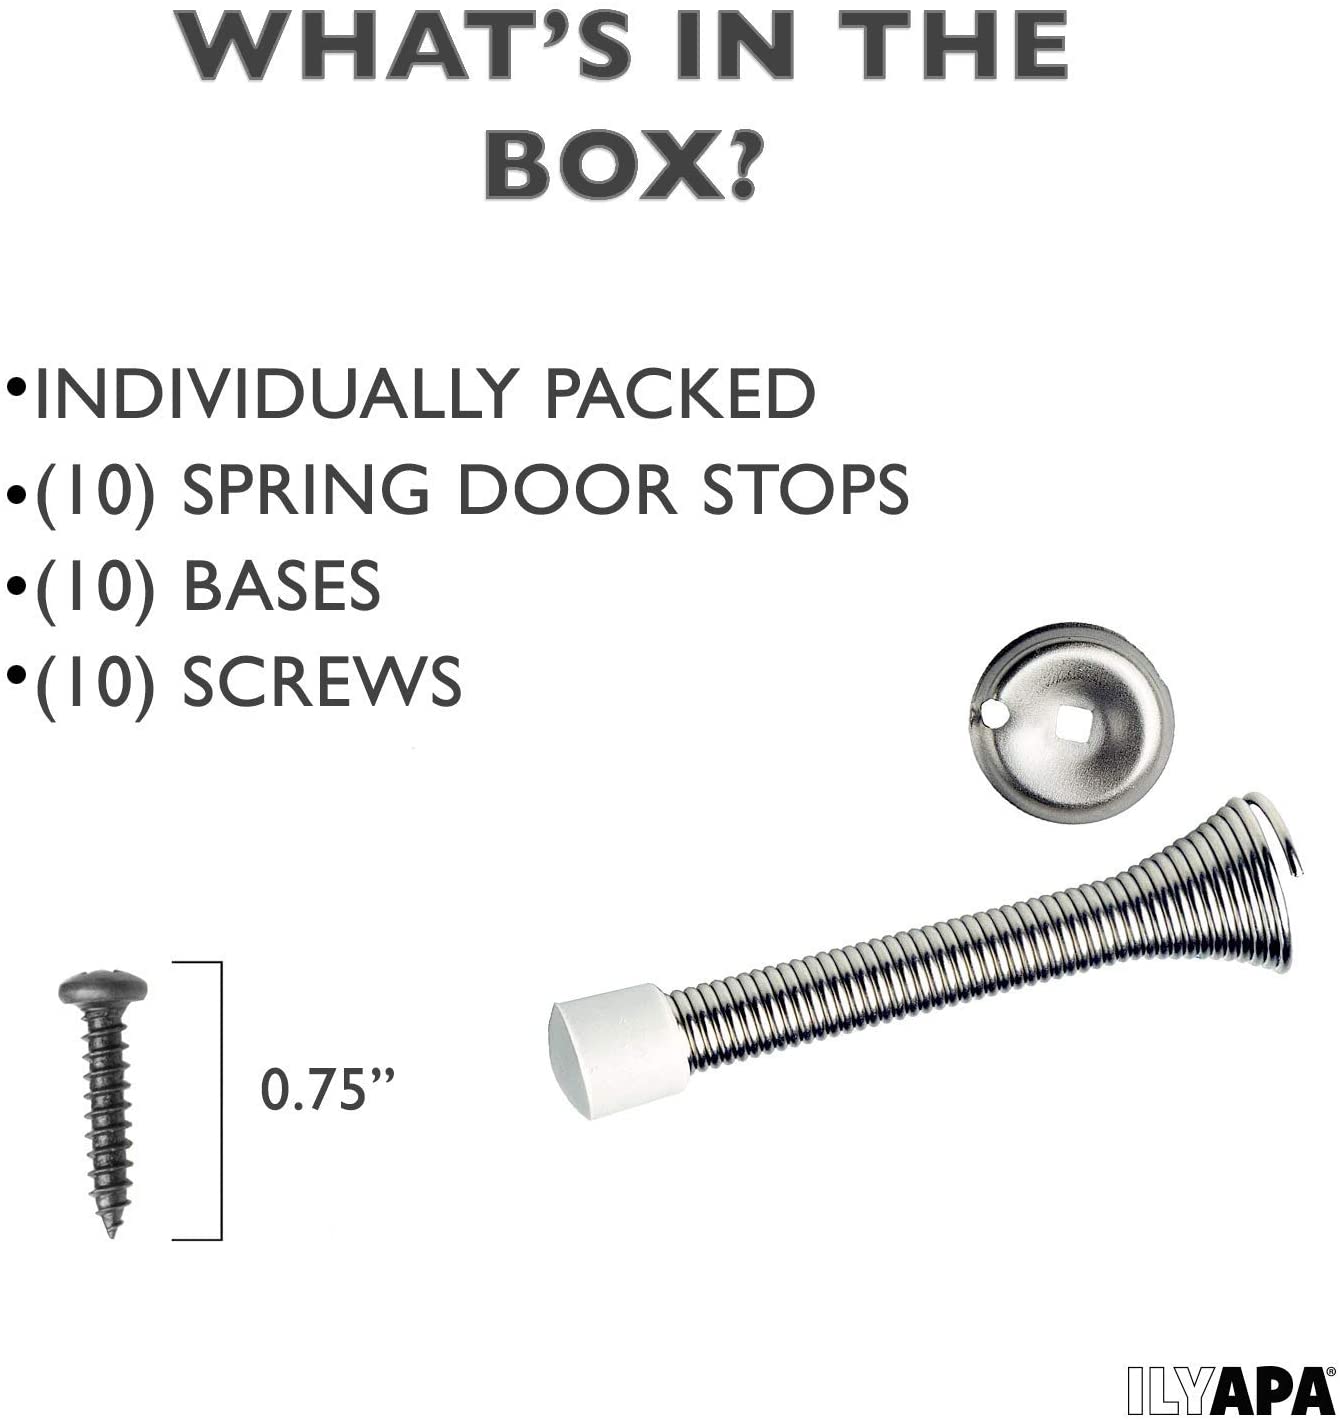 16 Pack Spring Door Stops 3 1/4 Flexible Heavy Duty Spring Door Stopper  with RustProof Screw Rubber Bumper Tips (Satin Nickel)